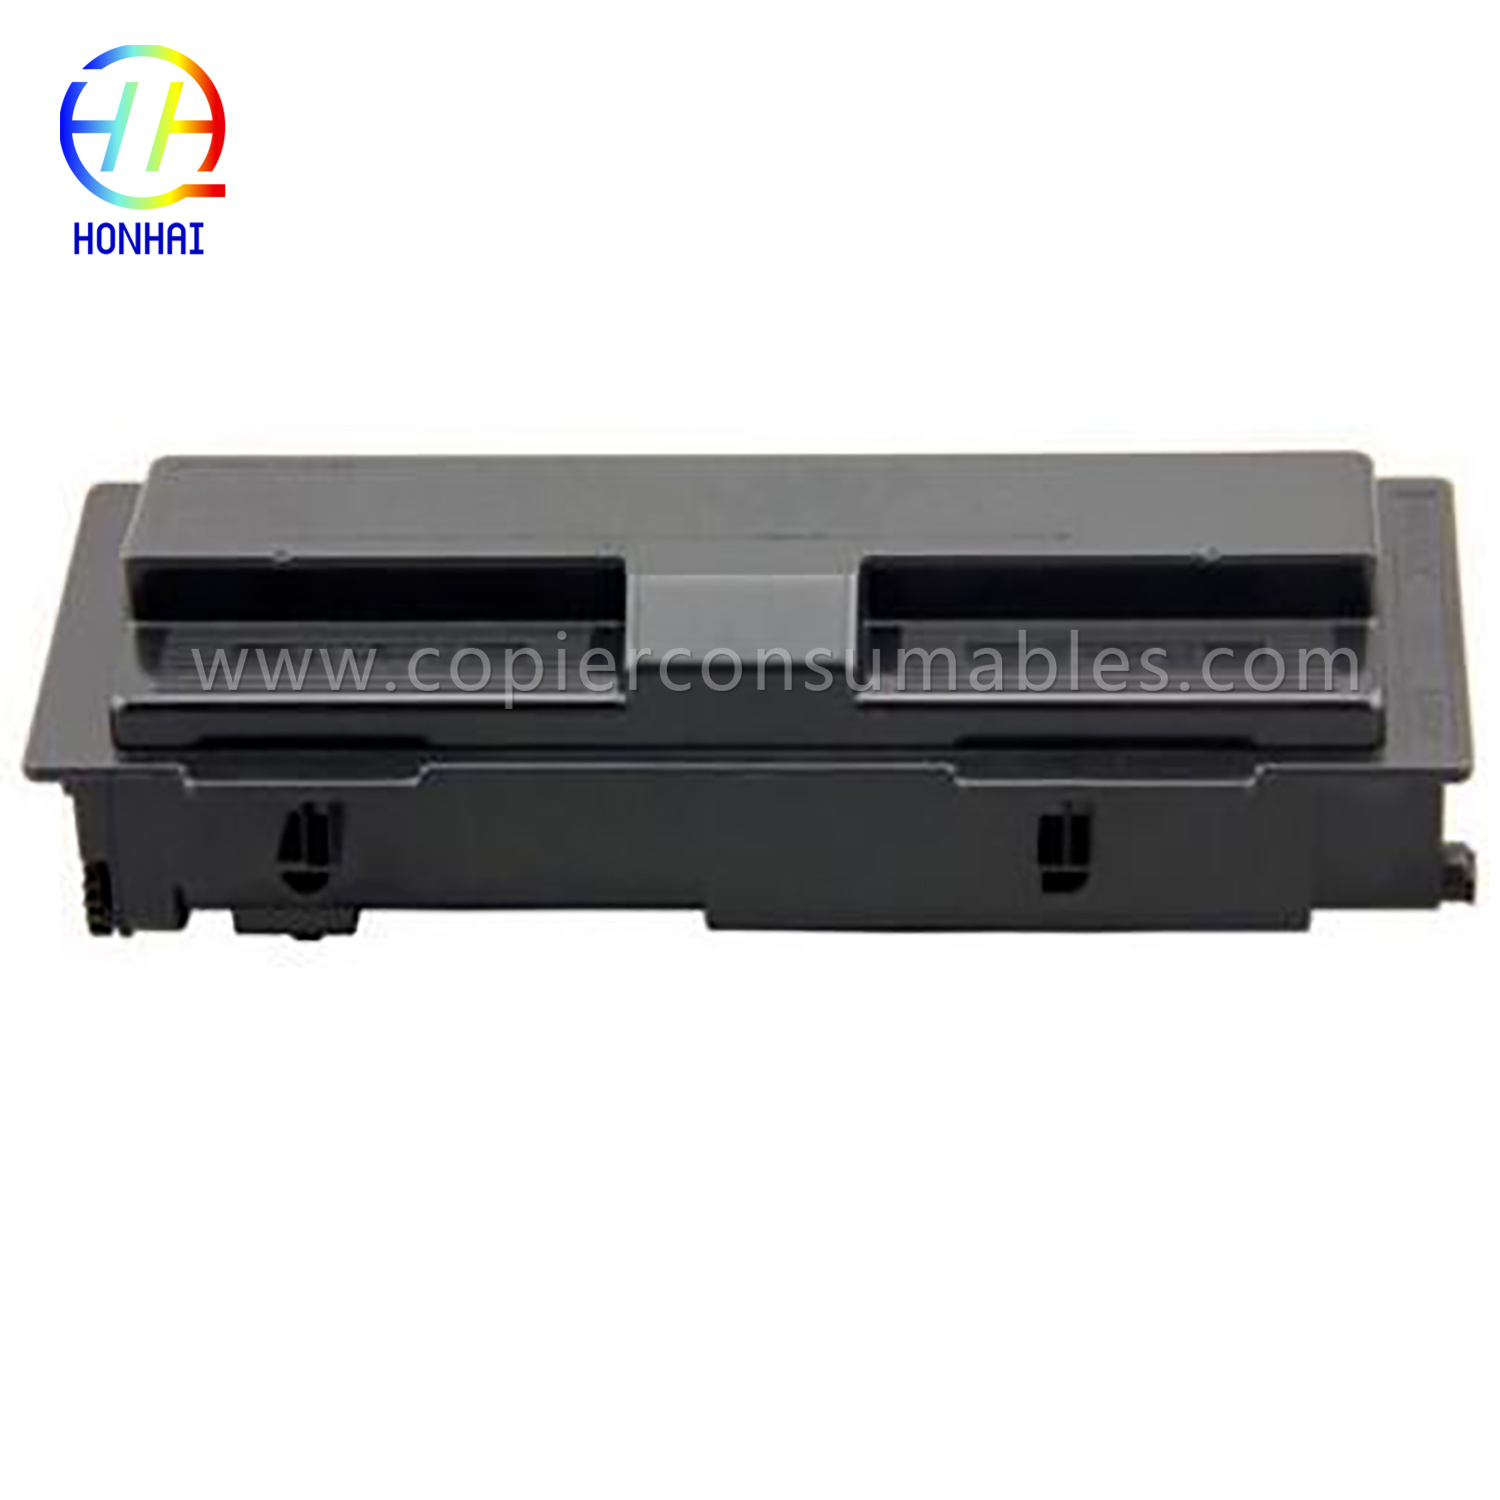 Toner Cartridge for Kyocera Fs-720 820 920 1016mfp 1116mfp (TK-113) (2) 拷贝